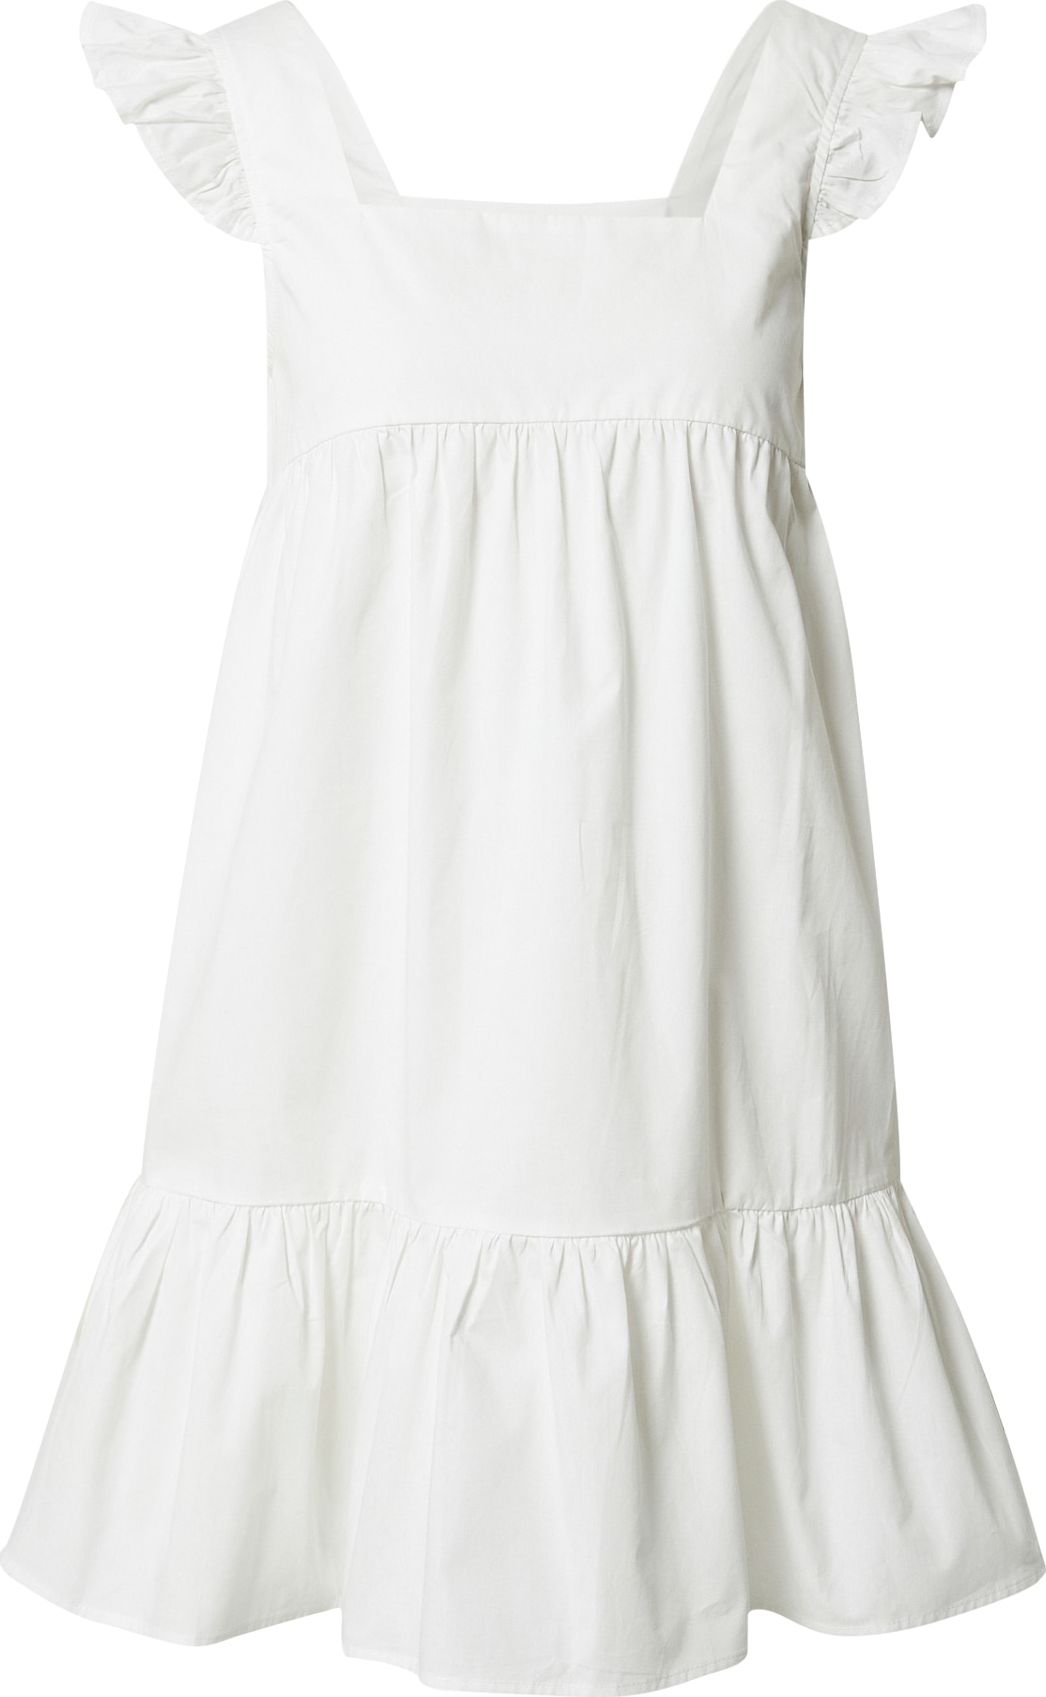 Compania Fantastica Letní šaty 'Vestido' bílá